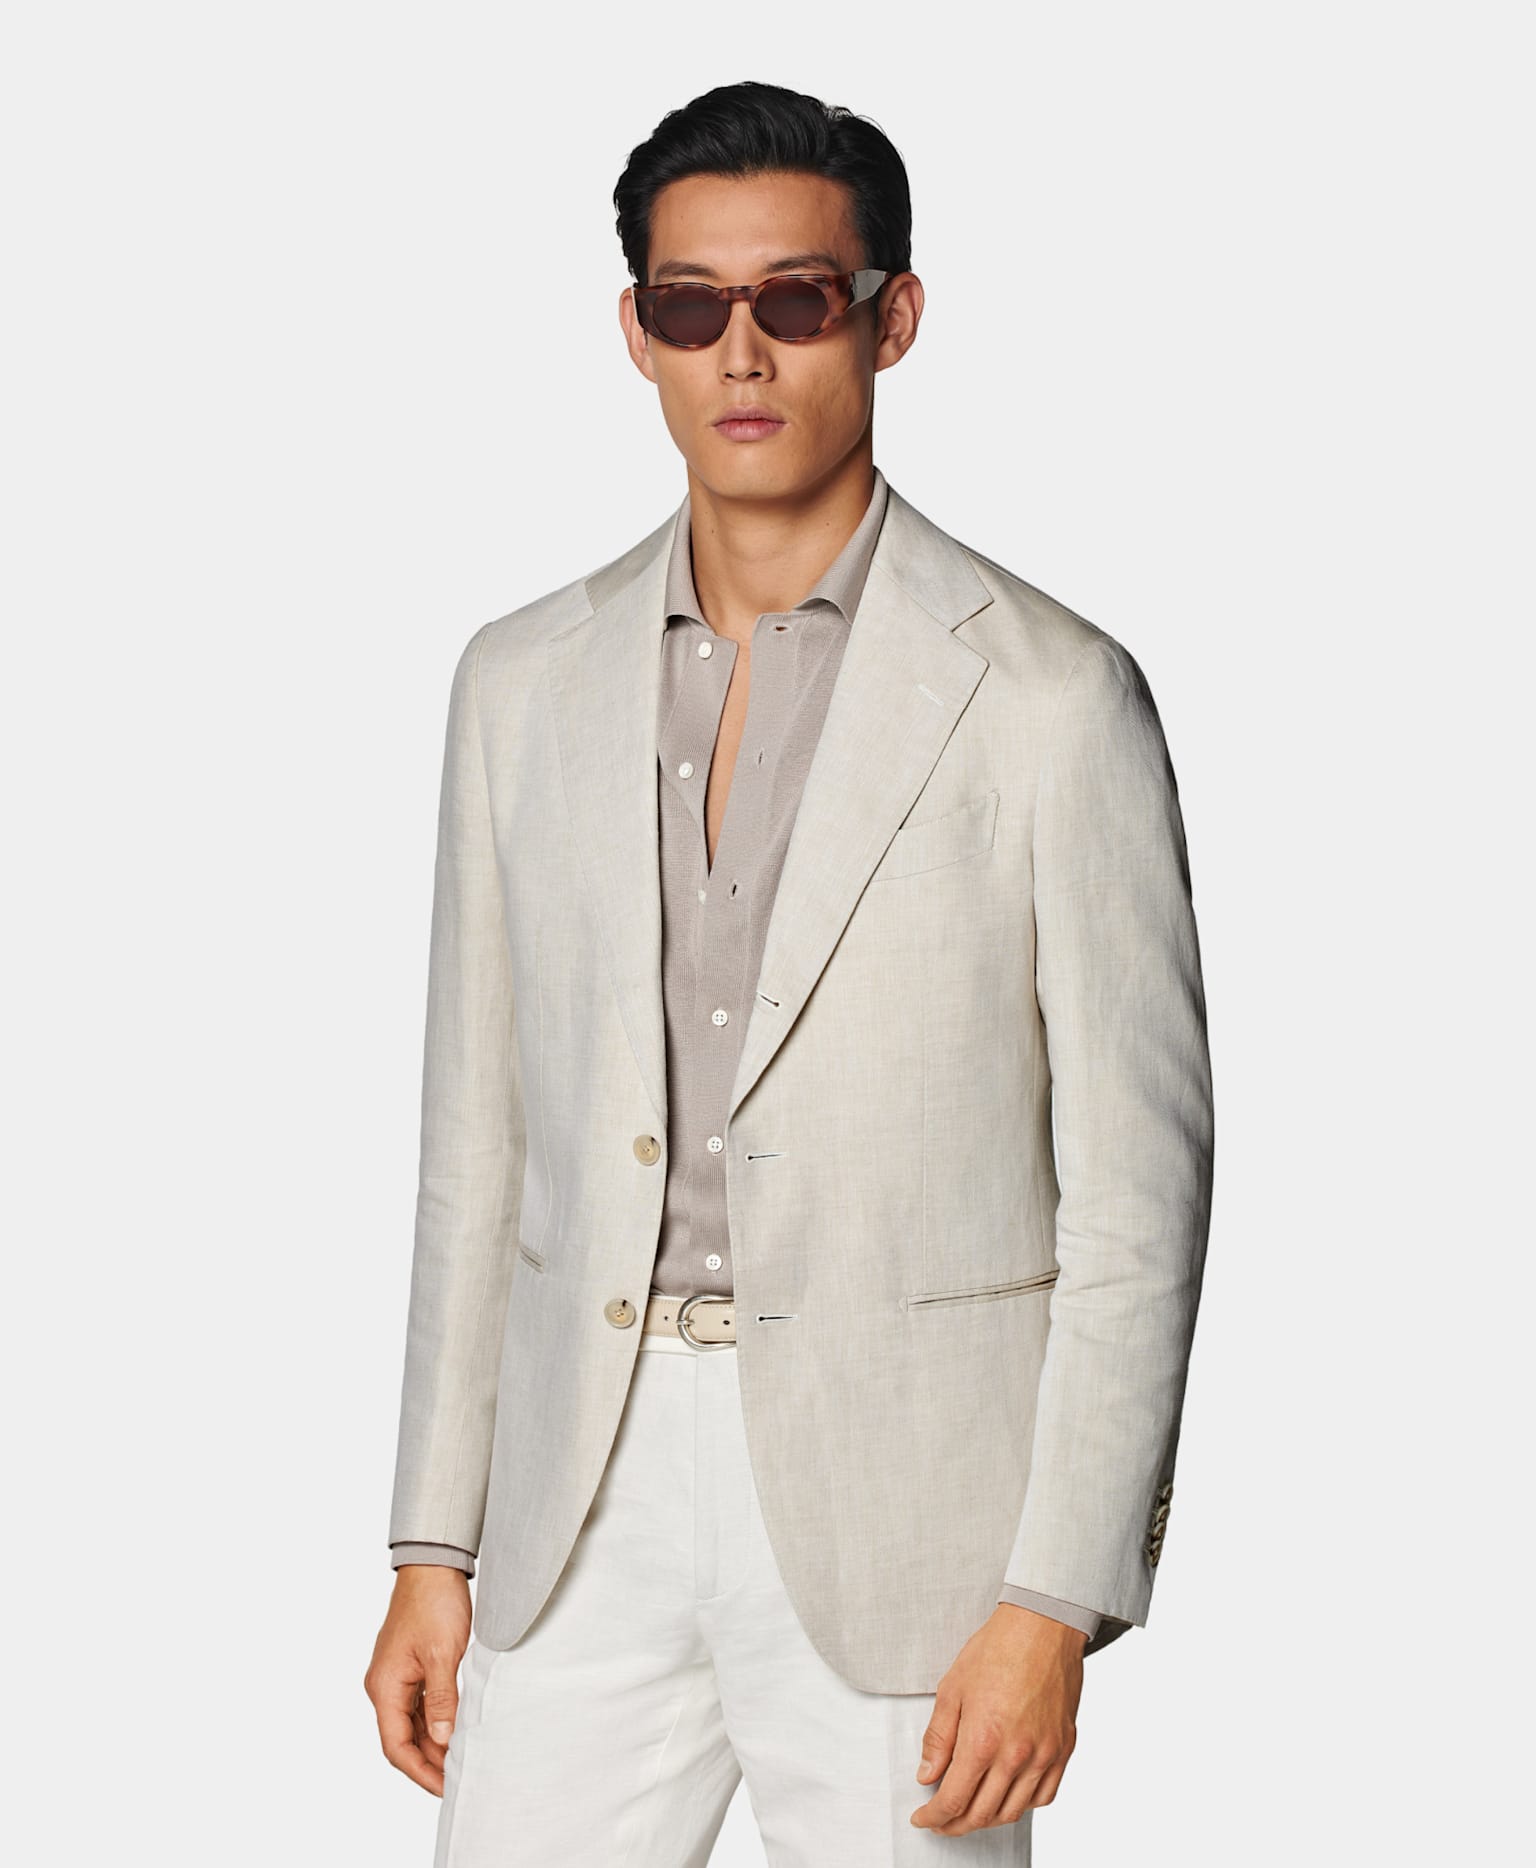 Blazer sable avec chemise en maille taupe, ceinture blanc cassé en cuir et pantalon blanc.